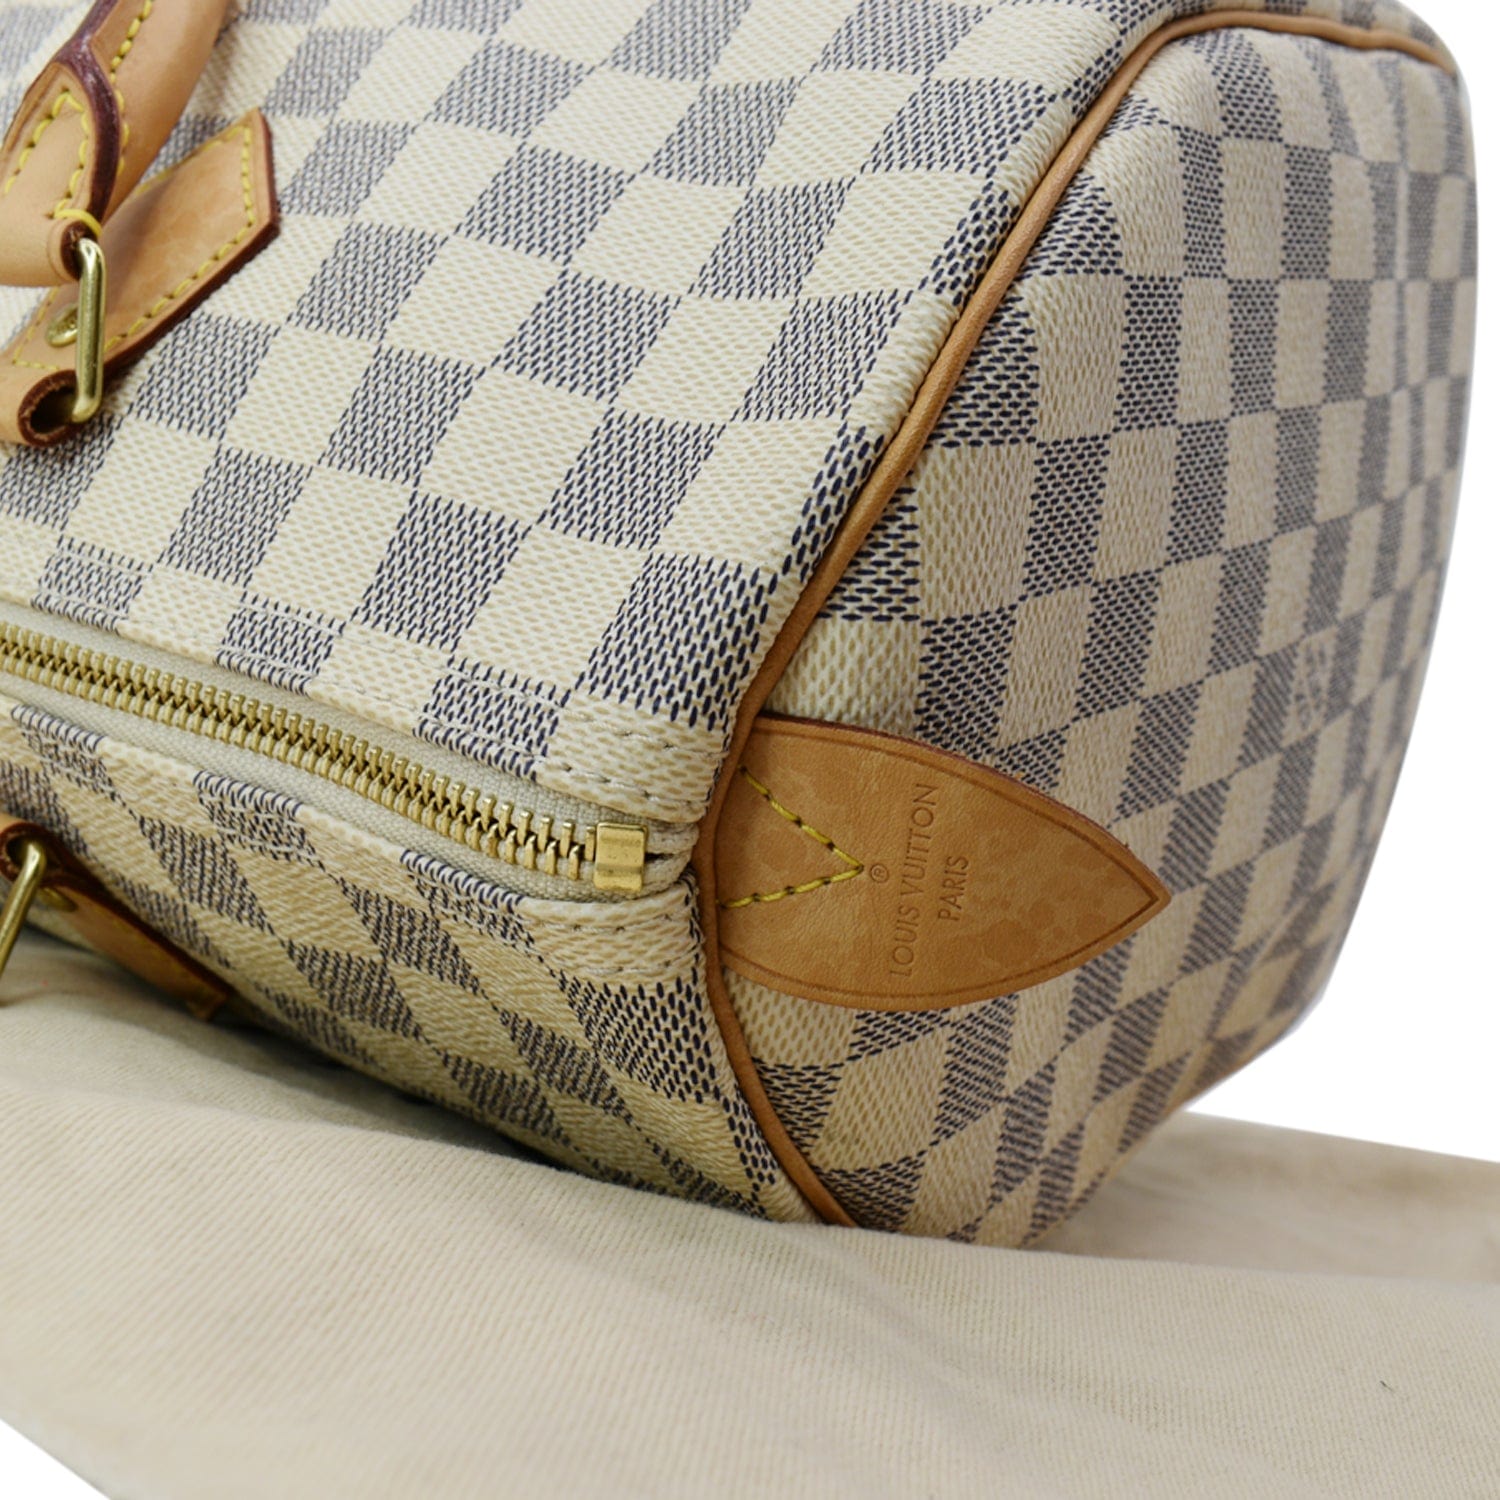 Authentic Louis Vuitton Damier Azur Speedy 35 Bag